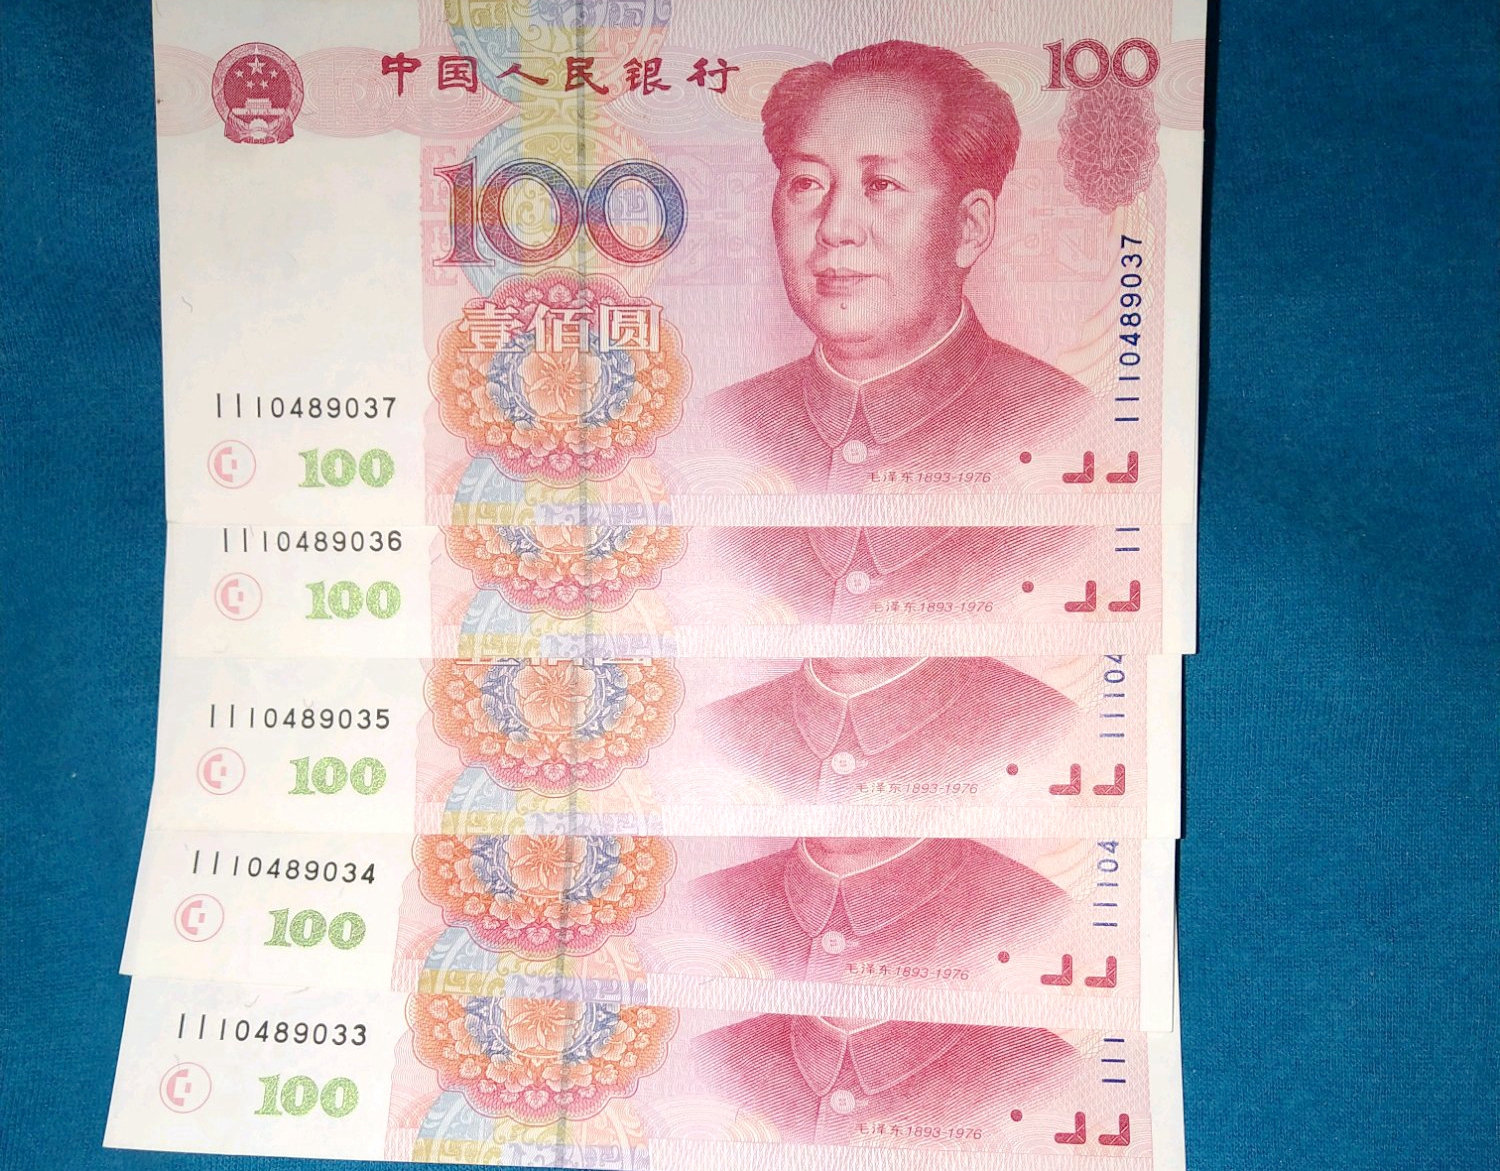 1999年100元人民币值多少钱这字母开头的100元人民币翻了5倍